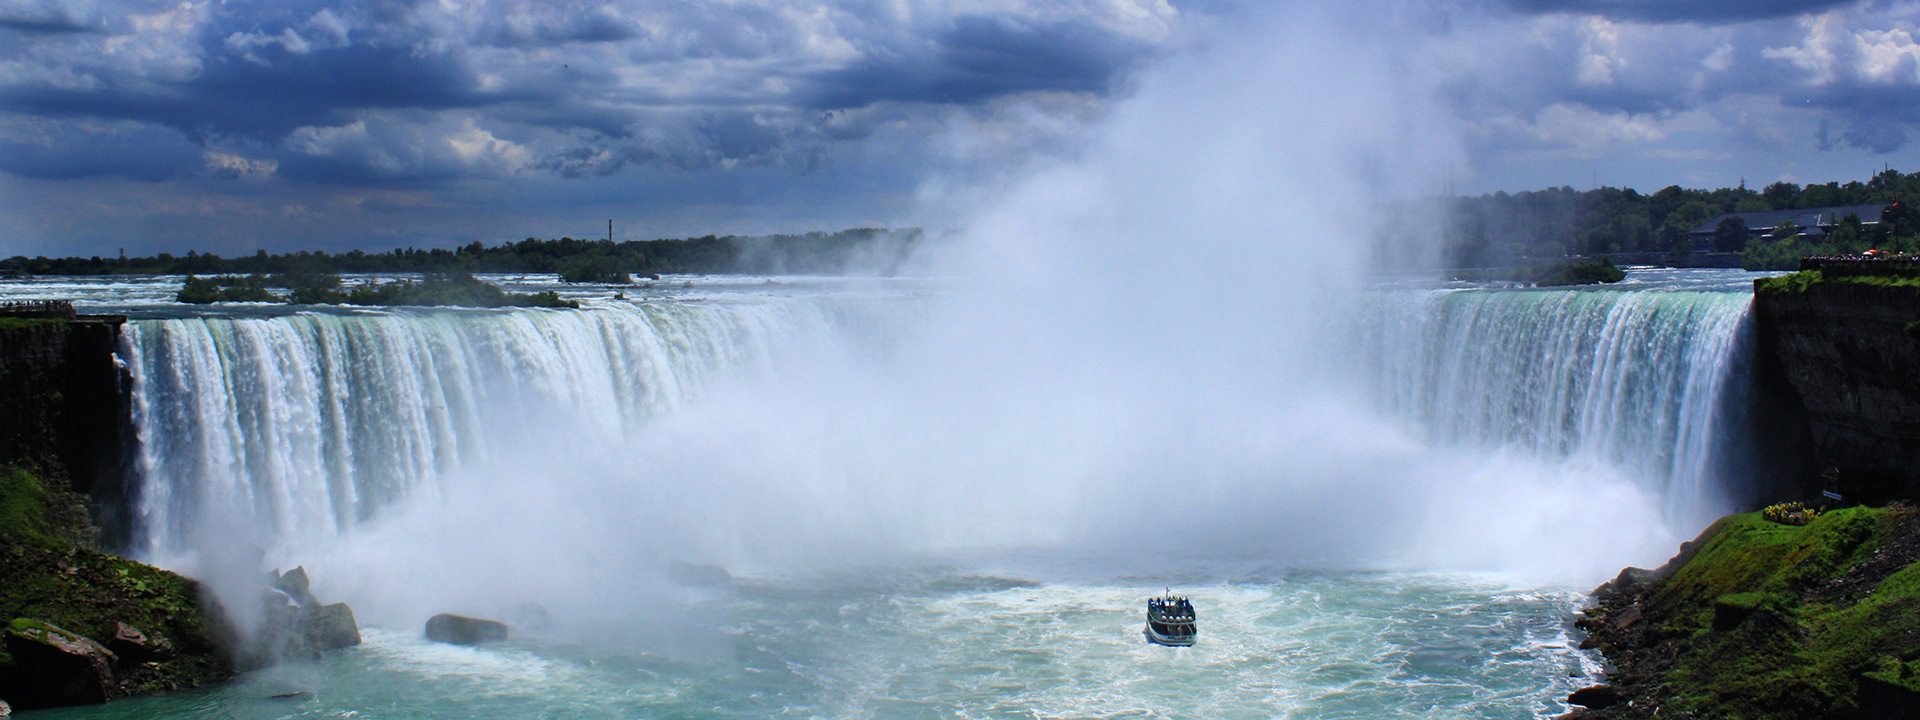 Toronto & Niagara Falls 